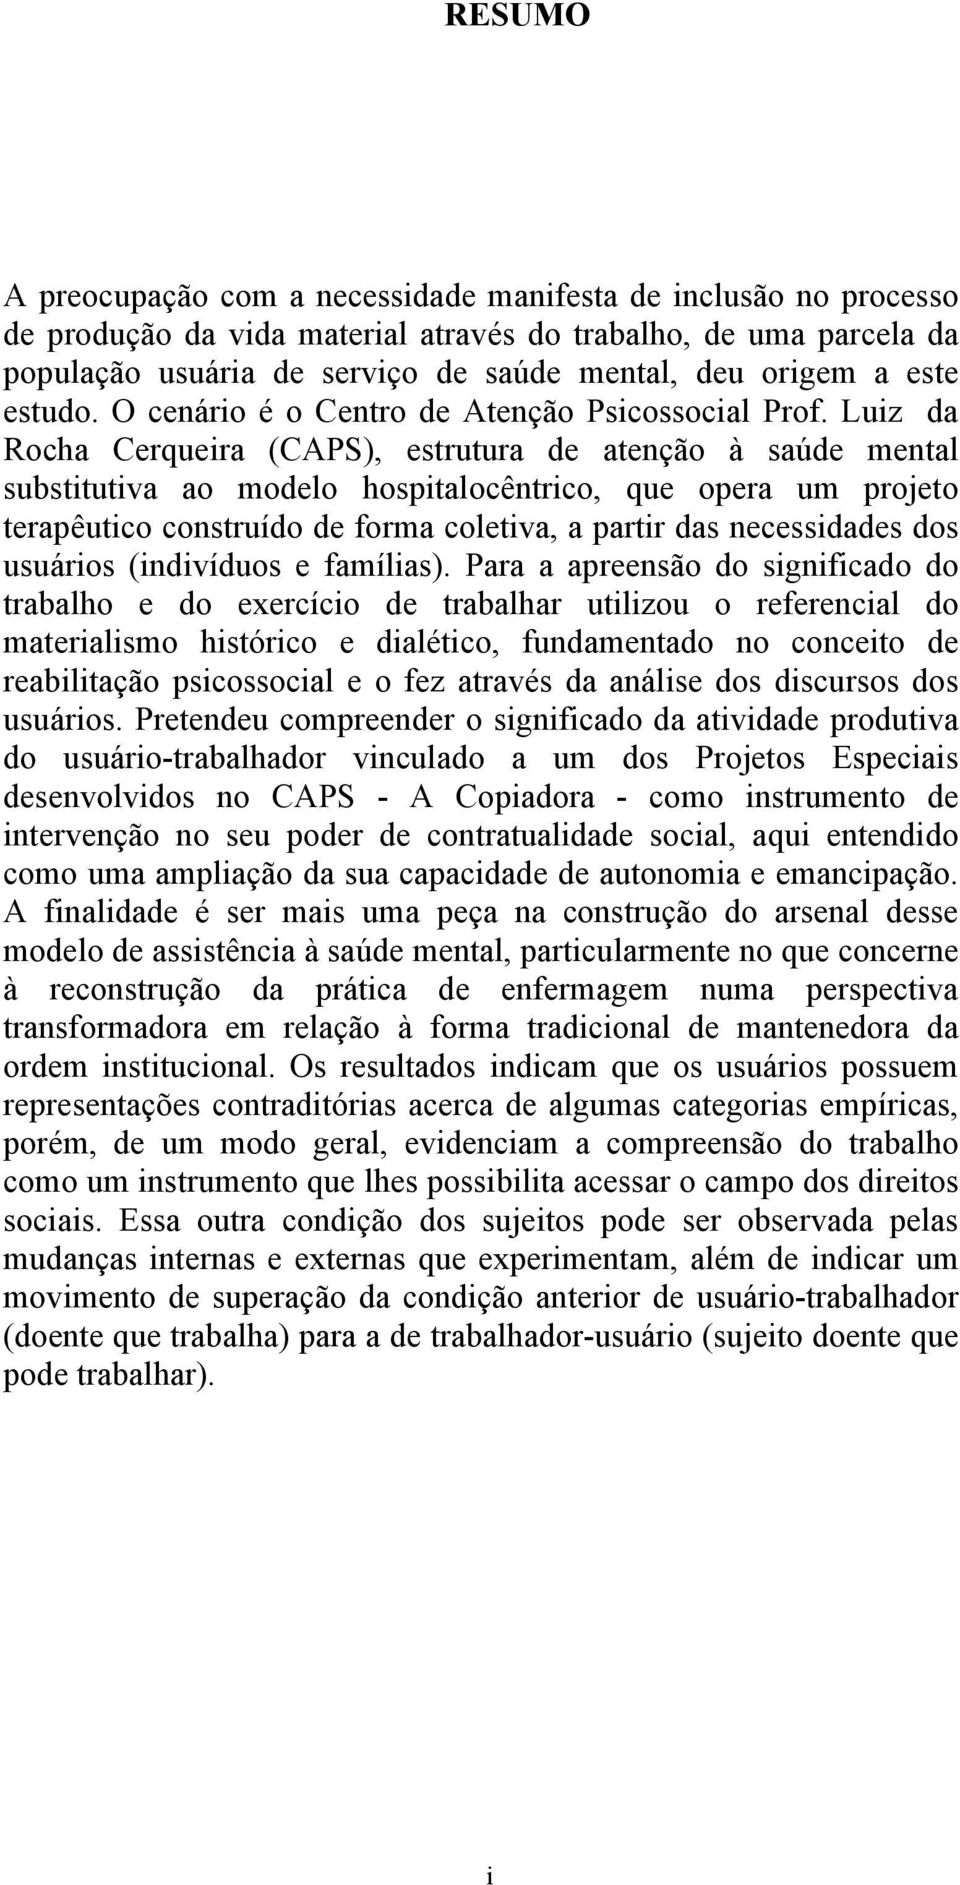 Luiz da Rocha Cerqueira (CAPS), estrutura de atenção à saúde mental substitutiva ao modelo hospitalocêntrico, que opera um projeto terapêutico construído de forma coletiva, a partir das necessidades